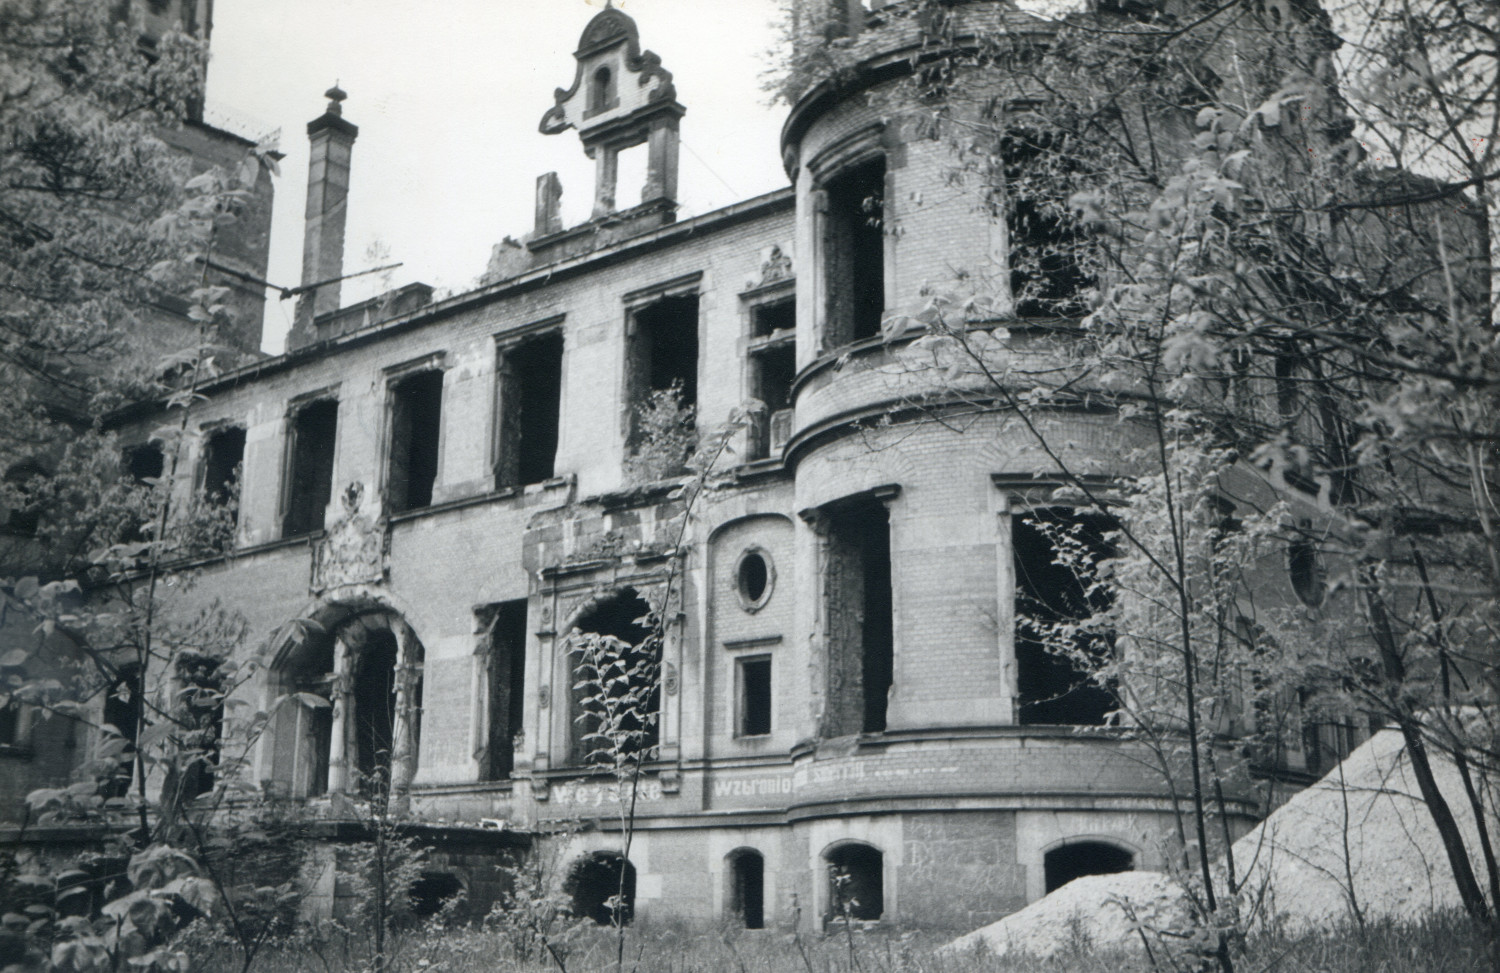 Ruiny pałacu w Reptach Śląskich w czasach powojennych. Ze zbiorów WKZ, dzięki uprzejmości Z. Banasia